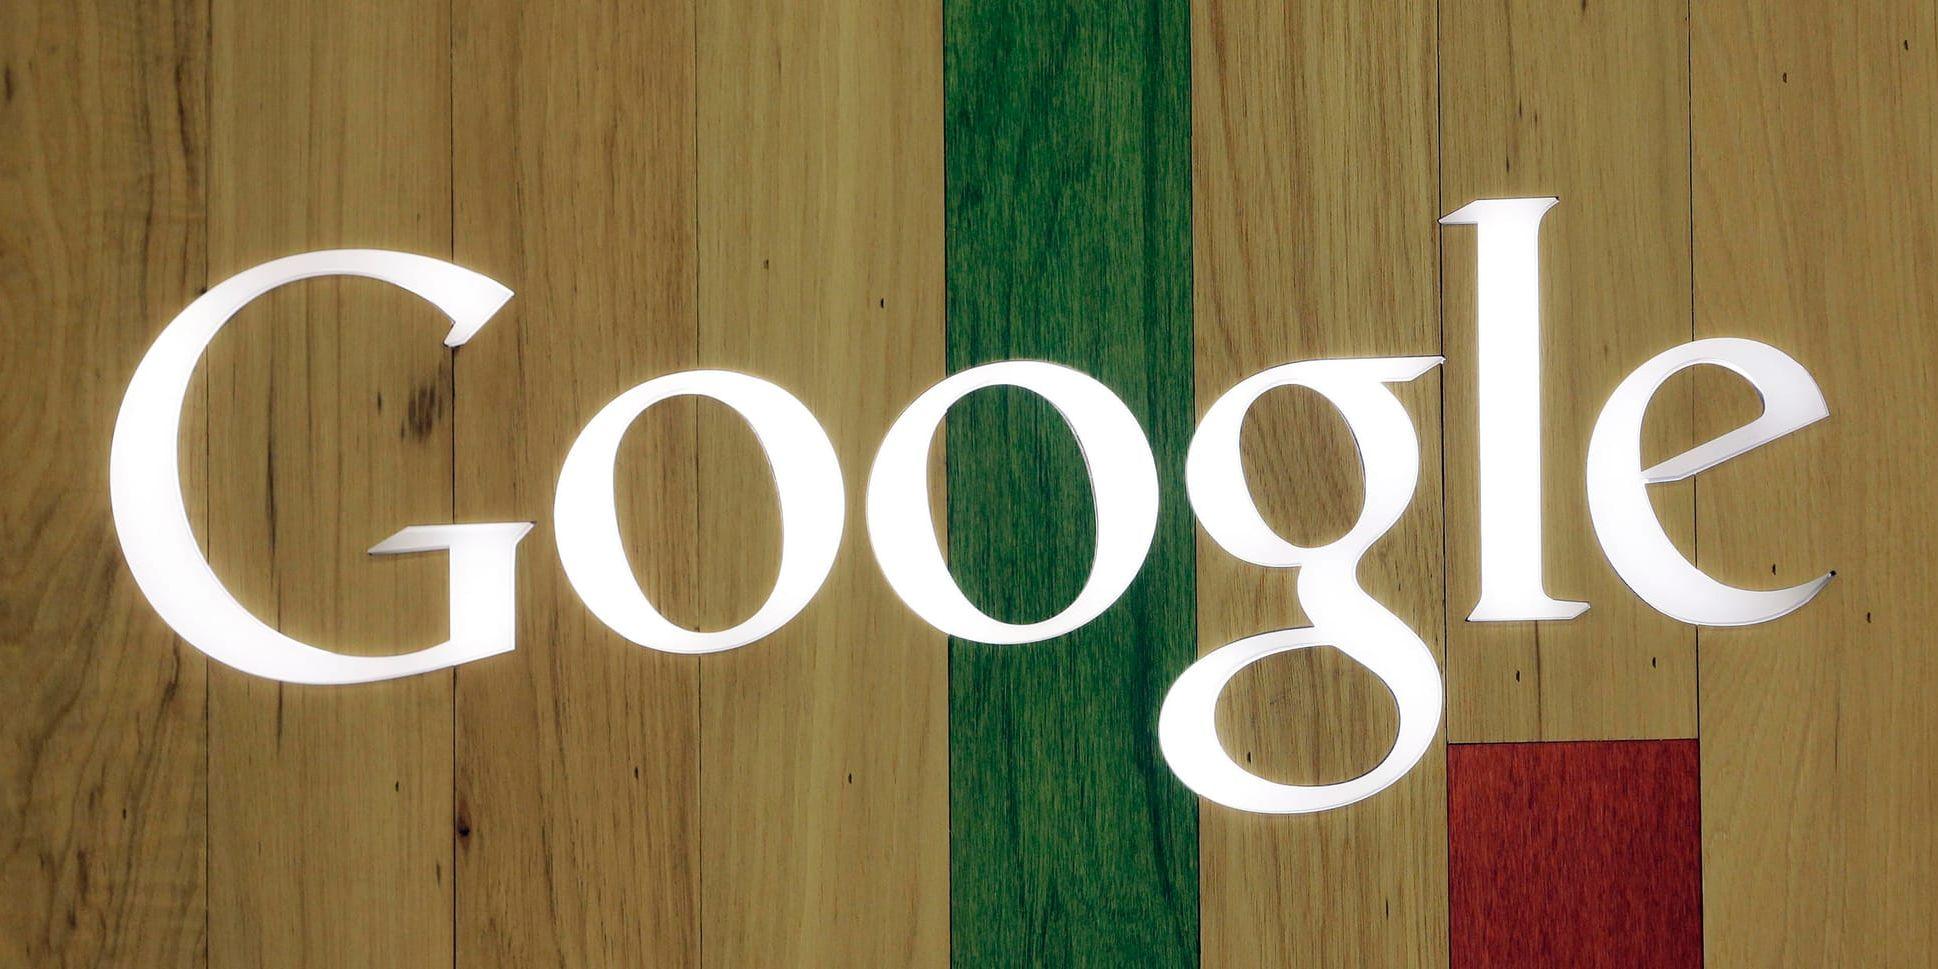 Google hotas av böter i Ryssland. Arkivbild.